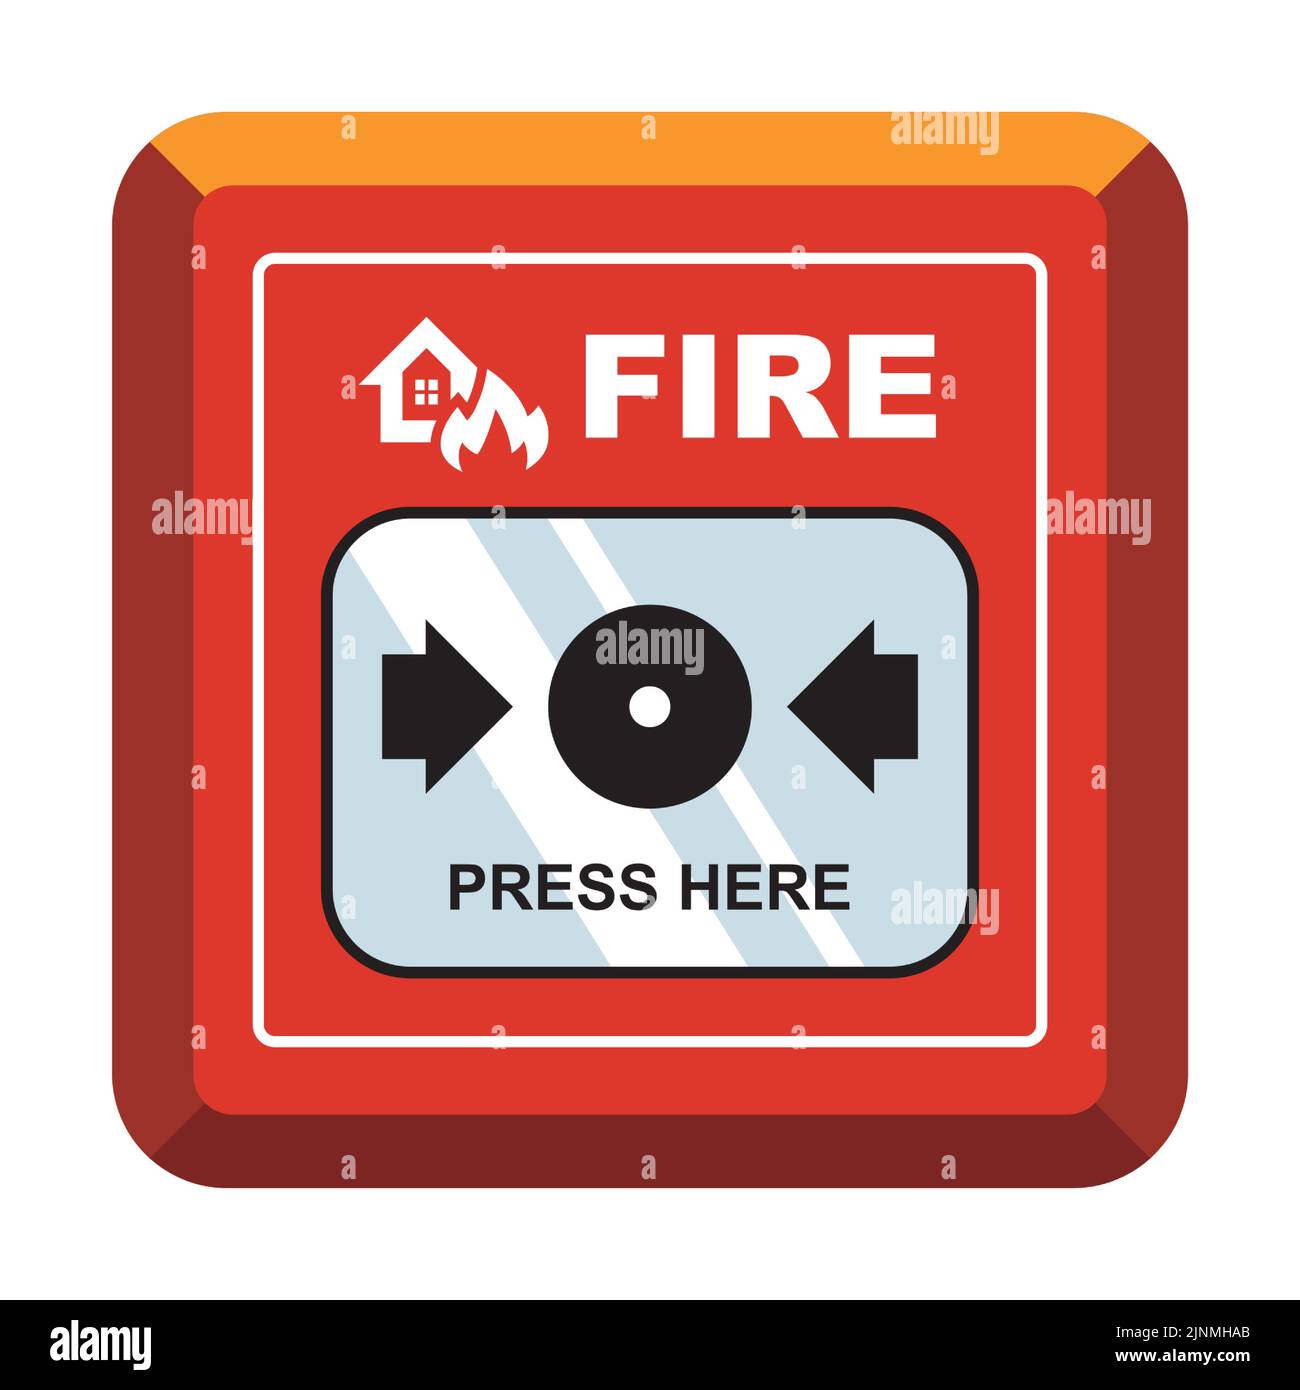 dispositif de lutte contre l'incendie rouge avec un bouton pour appeler les pompiers. illustration vectorielle plate. Illustration de Vecteur